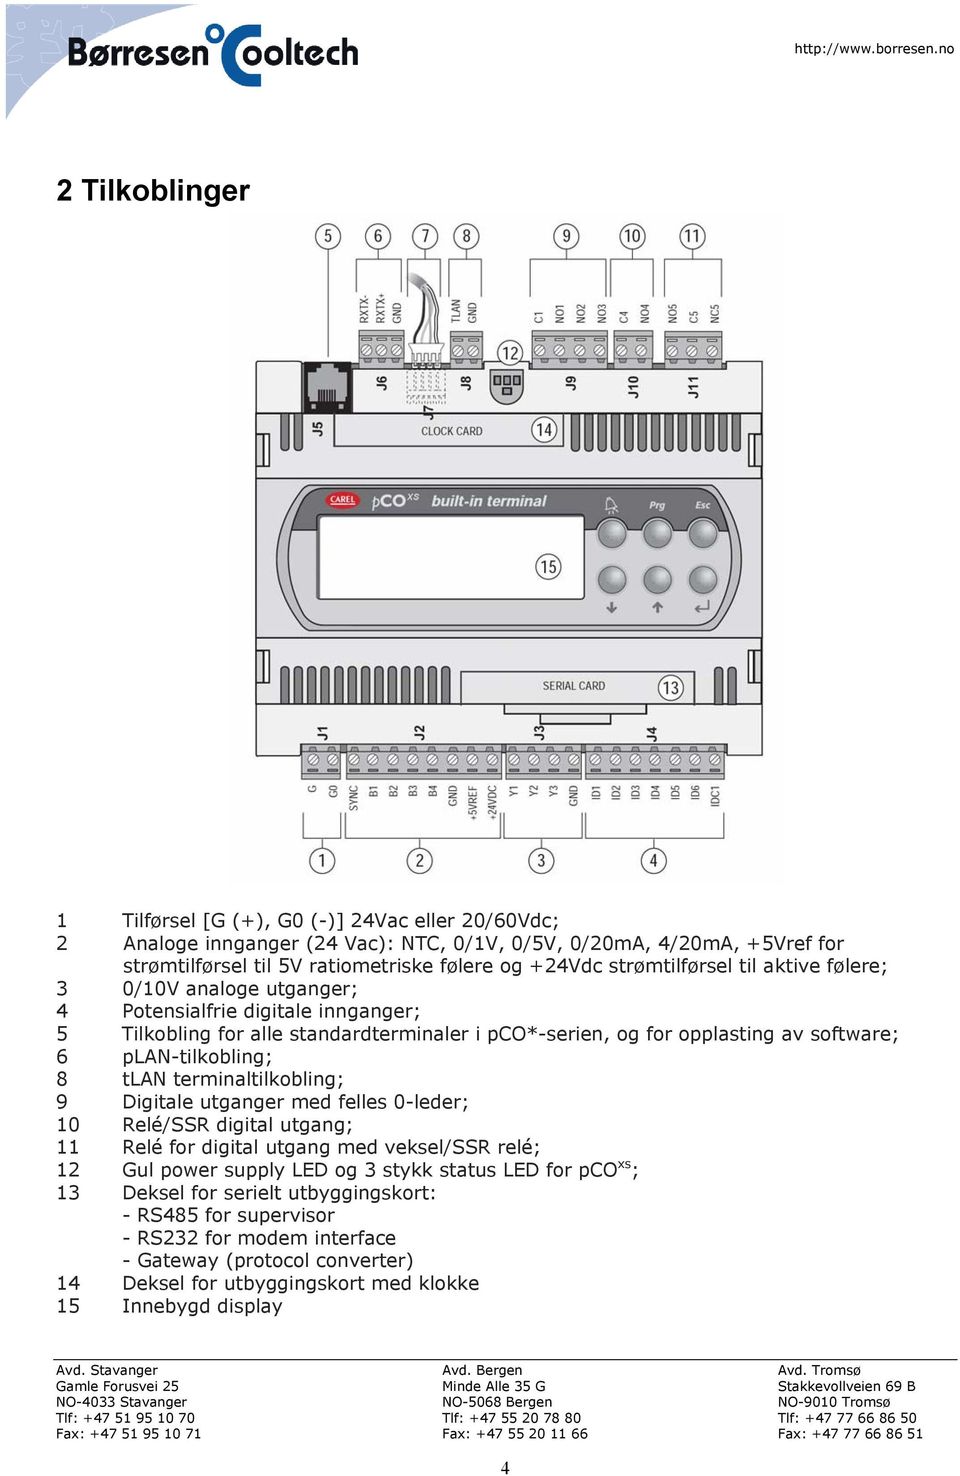 plan-tilkobling; 8 tlan terminaltilkobling; 9 Digitale utganger med felles 0-leder; 10 Relé/SSR digital utgang; 11 Relé for digital utgang med veksel/ssr relé; 12 Gul power supply LED og 3 stykk